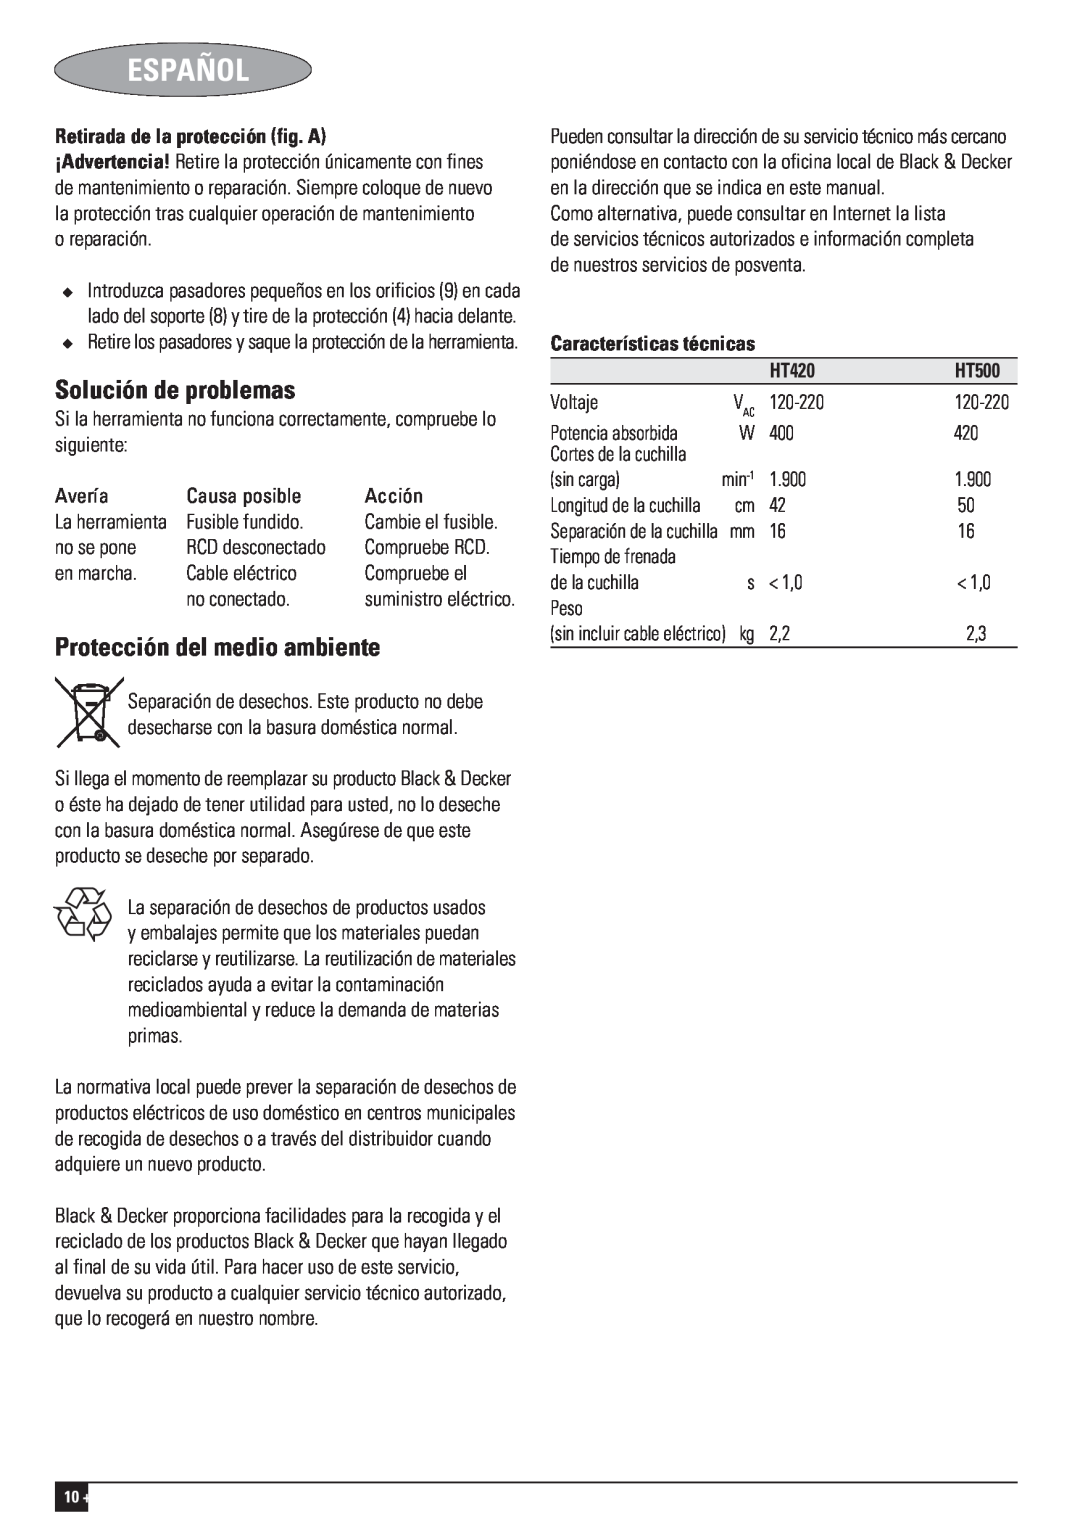 Black & Decker HT420, 477435-02-PDF1 Solución de problemas, Protección del medio ambiente, Español, RCD desconectado 